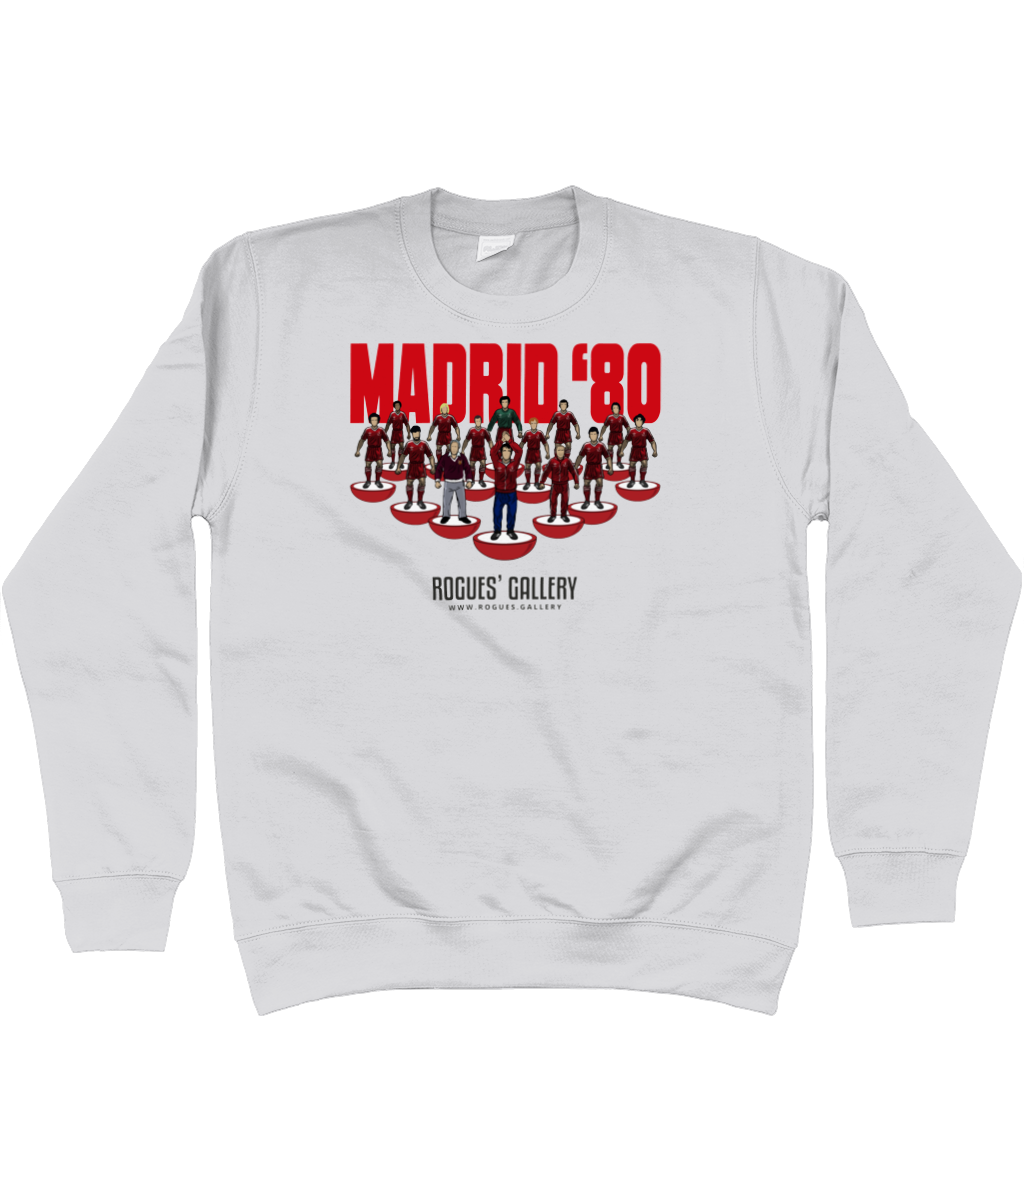 Madrid 80 Unisex Sweatshirt